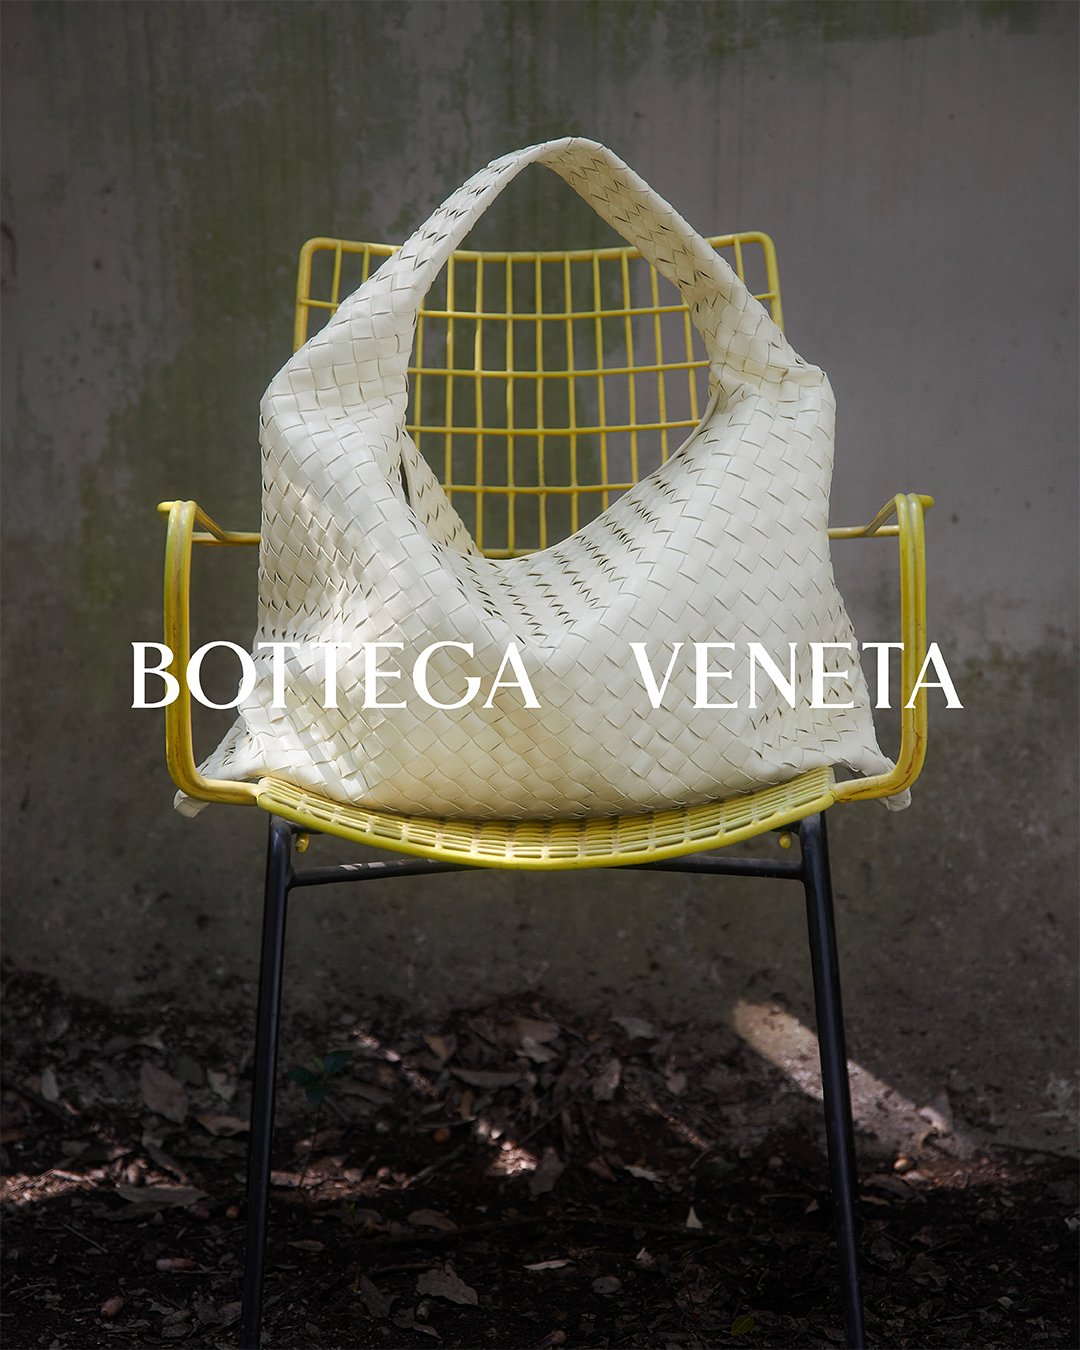 ボッテガ・ヴェネタの新作バッグ「HOP」のヴィジュアル